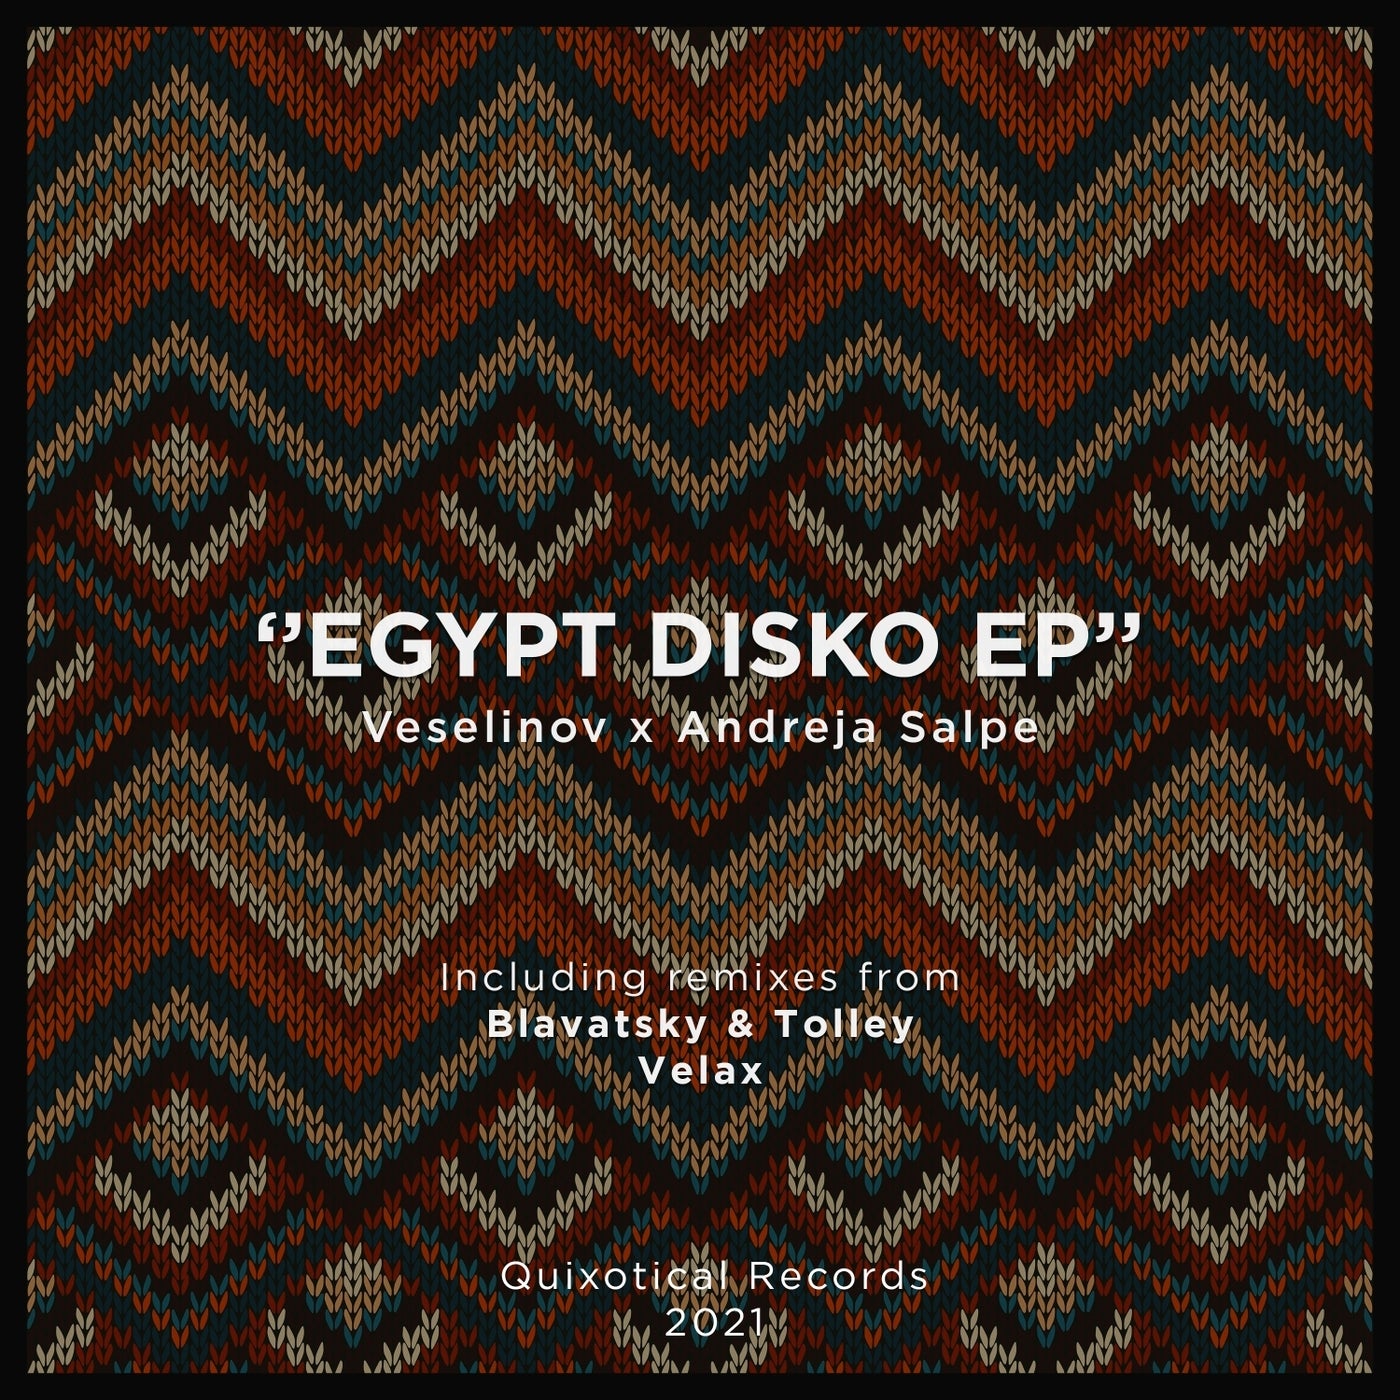 Egypt Disko - EP